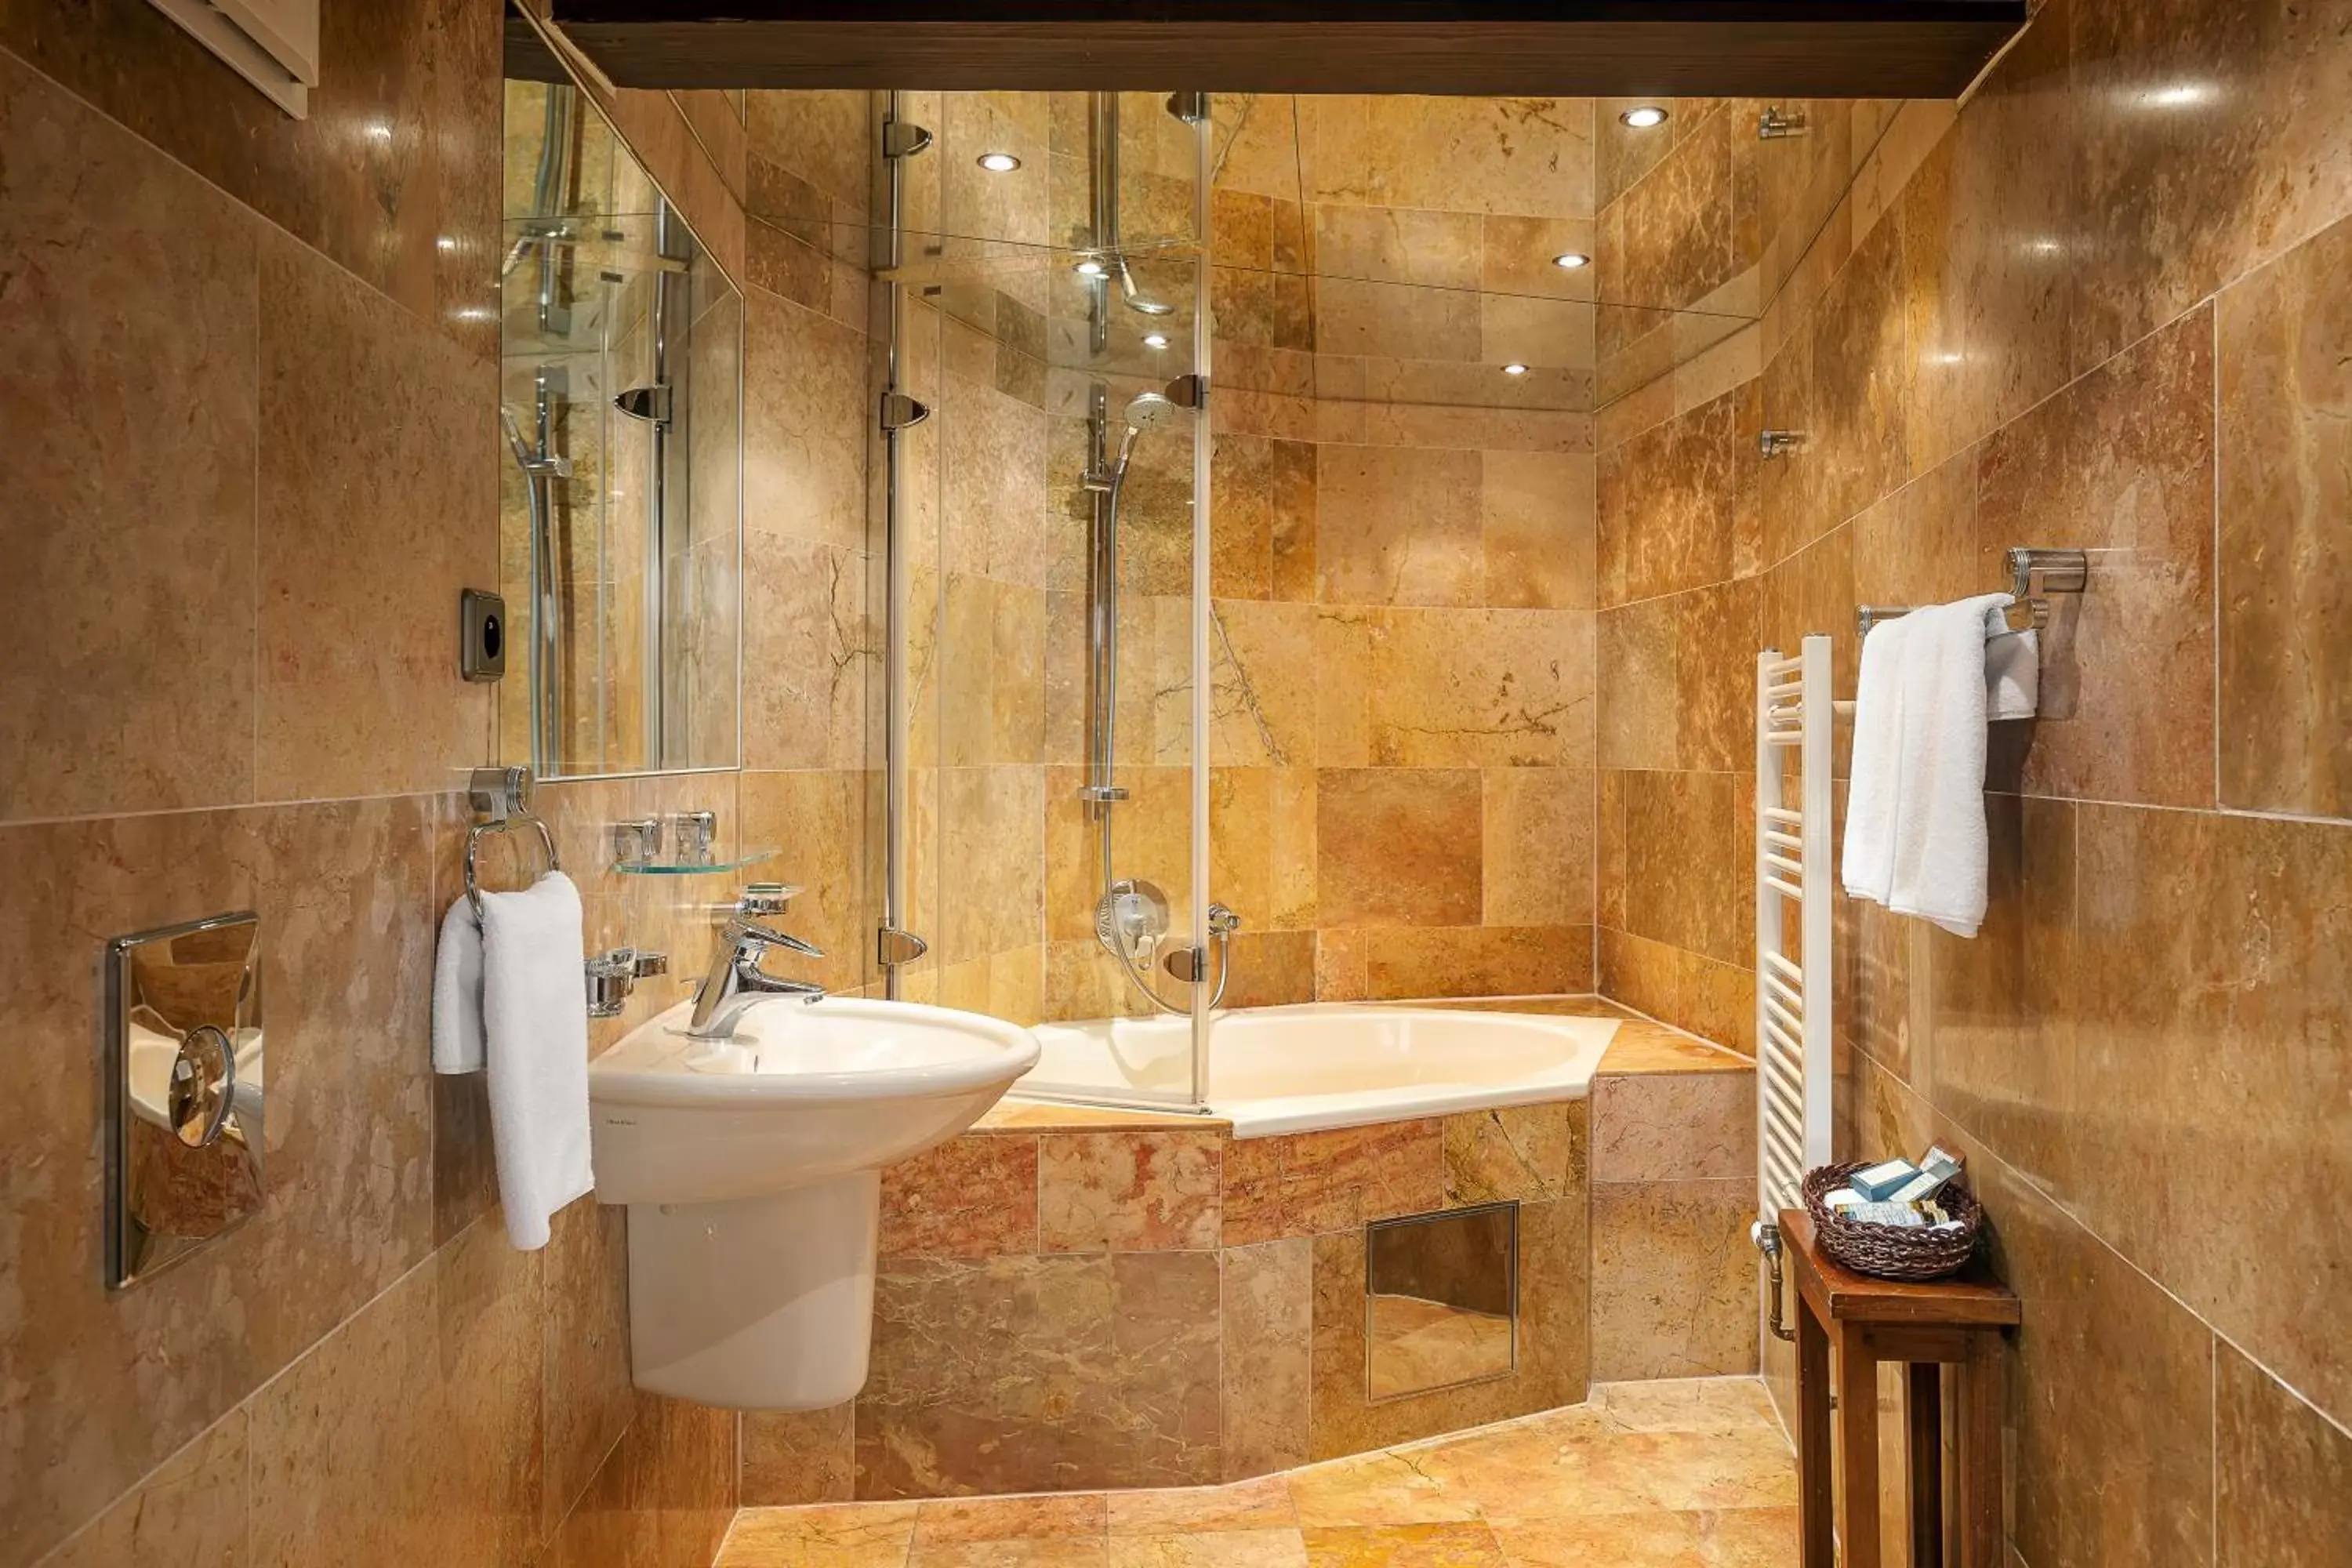 Shower, Bathroom in Hotel U Prince Prague by BHG